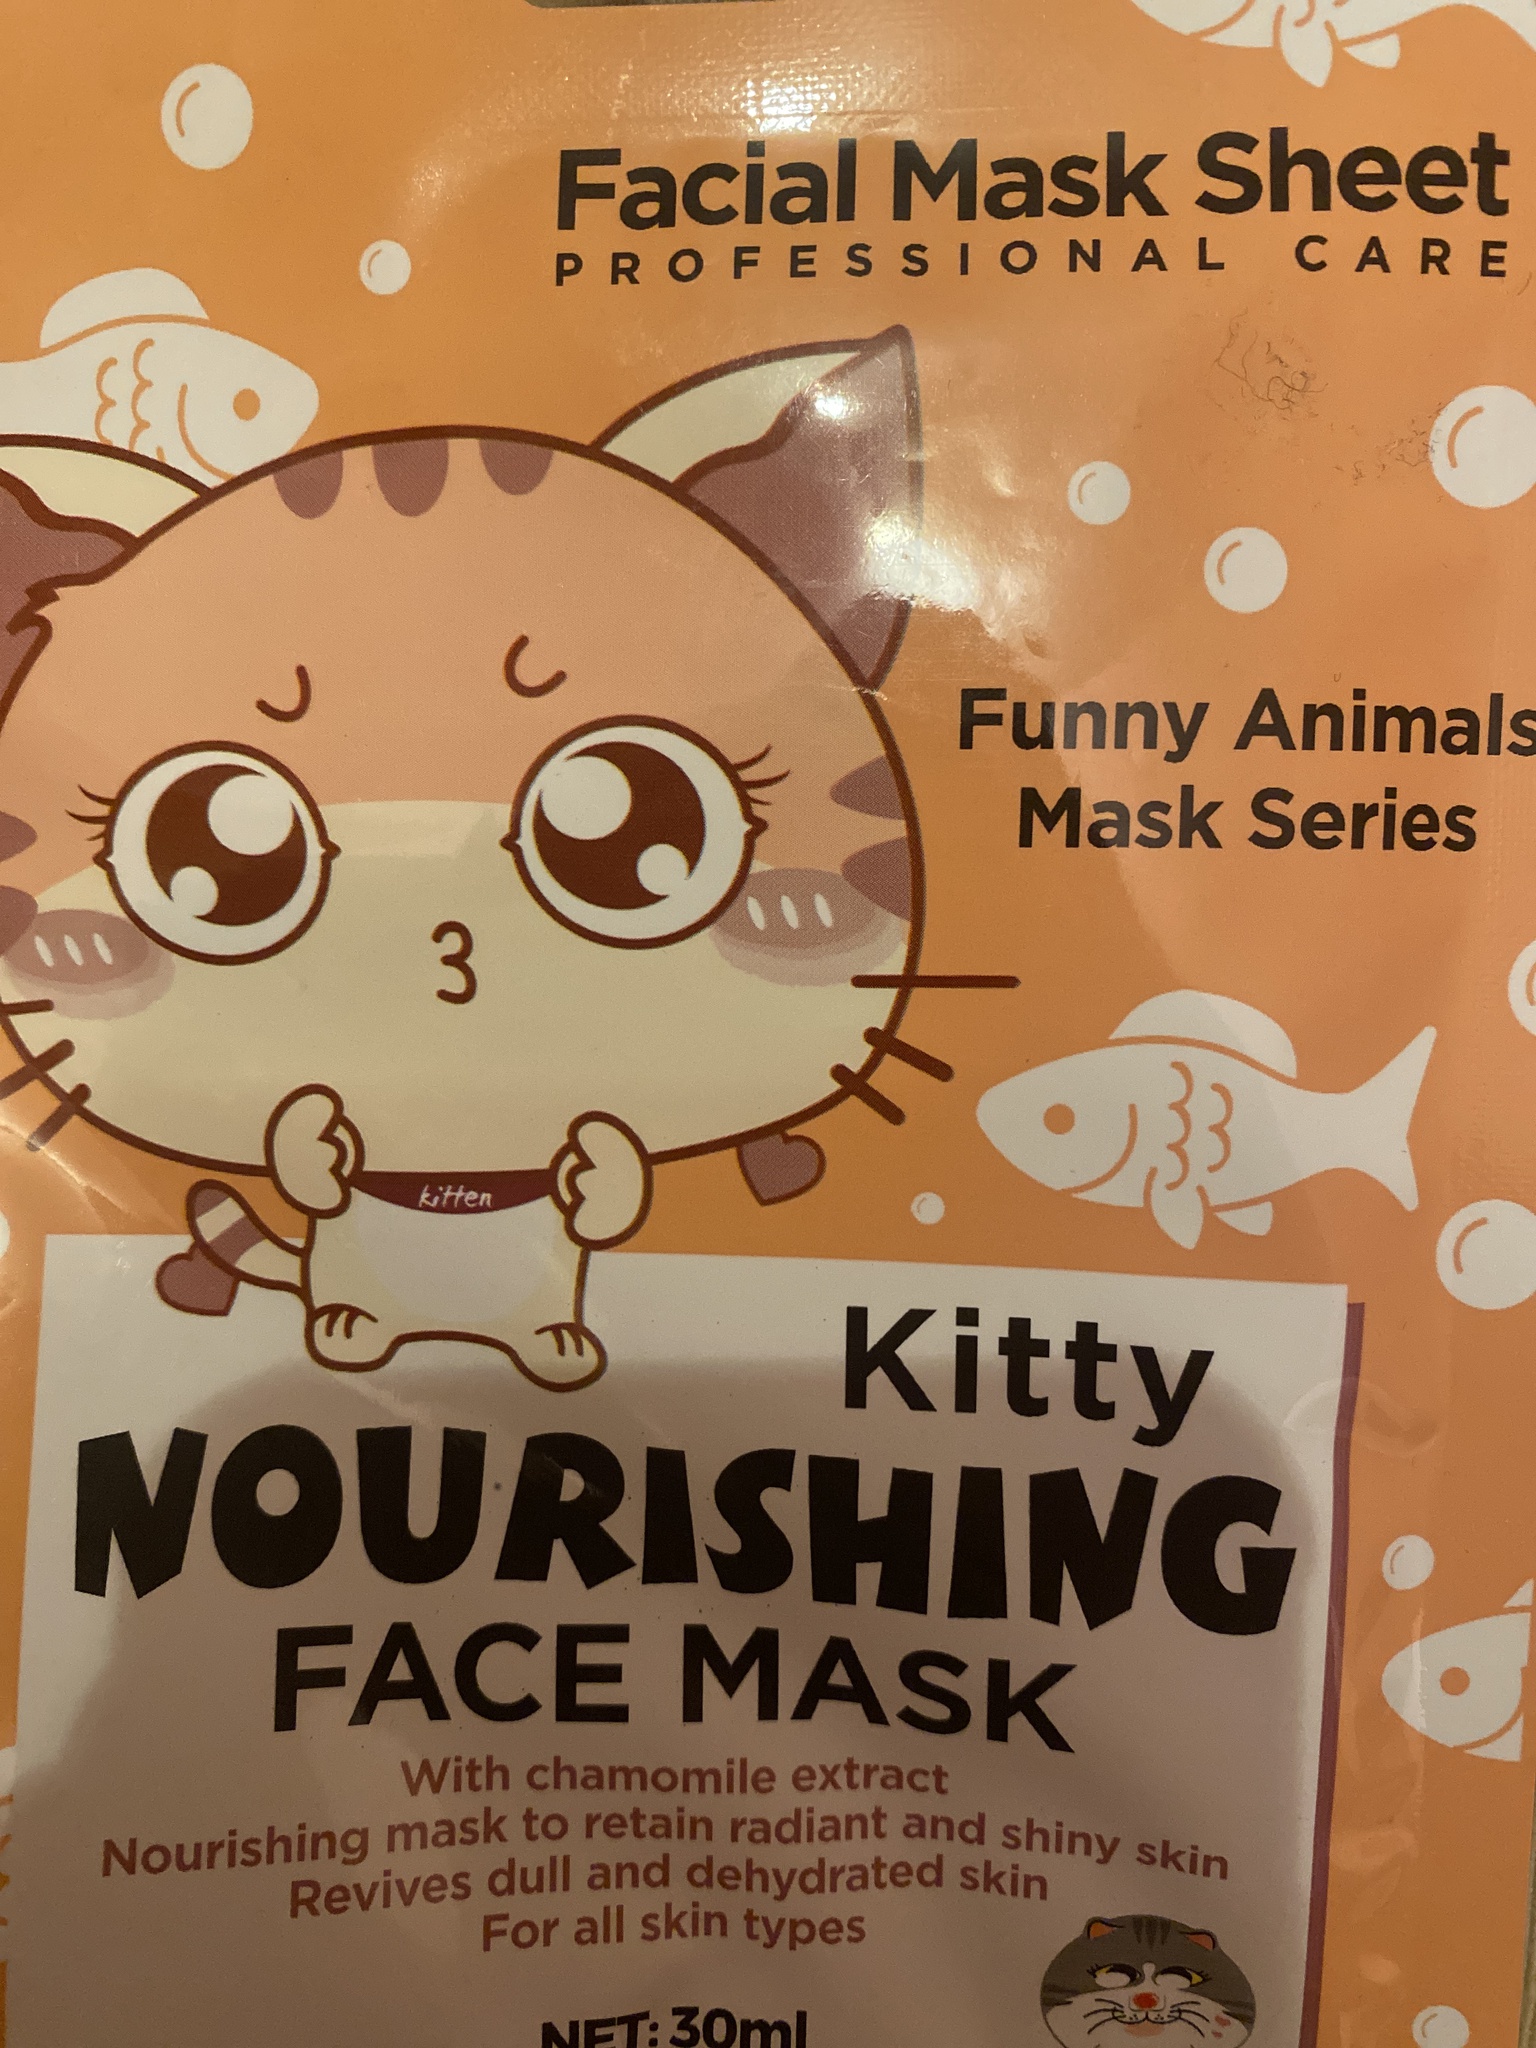 NK Professional Care Facial Mask Sheet